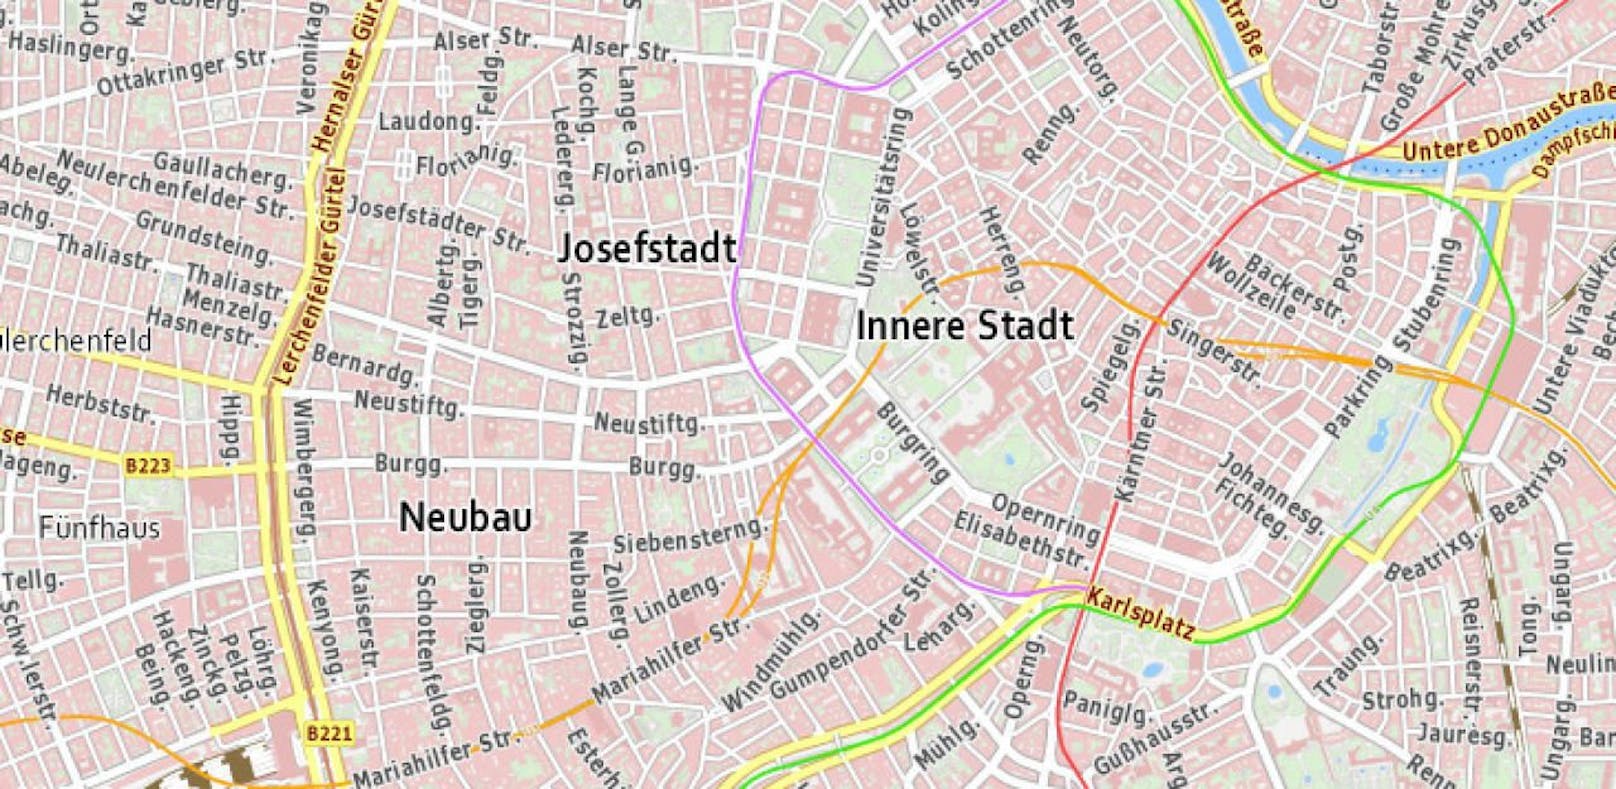 Wer gerne die Stadtwanderwege in Wien erkunden möchte, kann dies am besten mit dem Online-Stadtplan in der Mobilversion machen. 